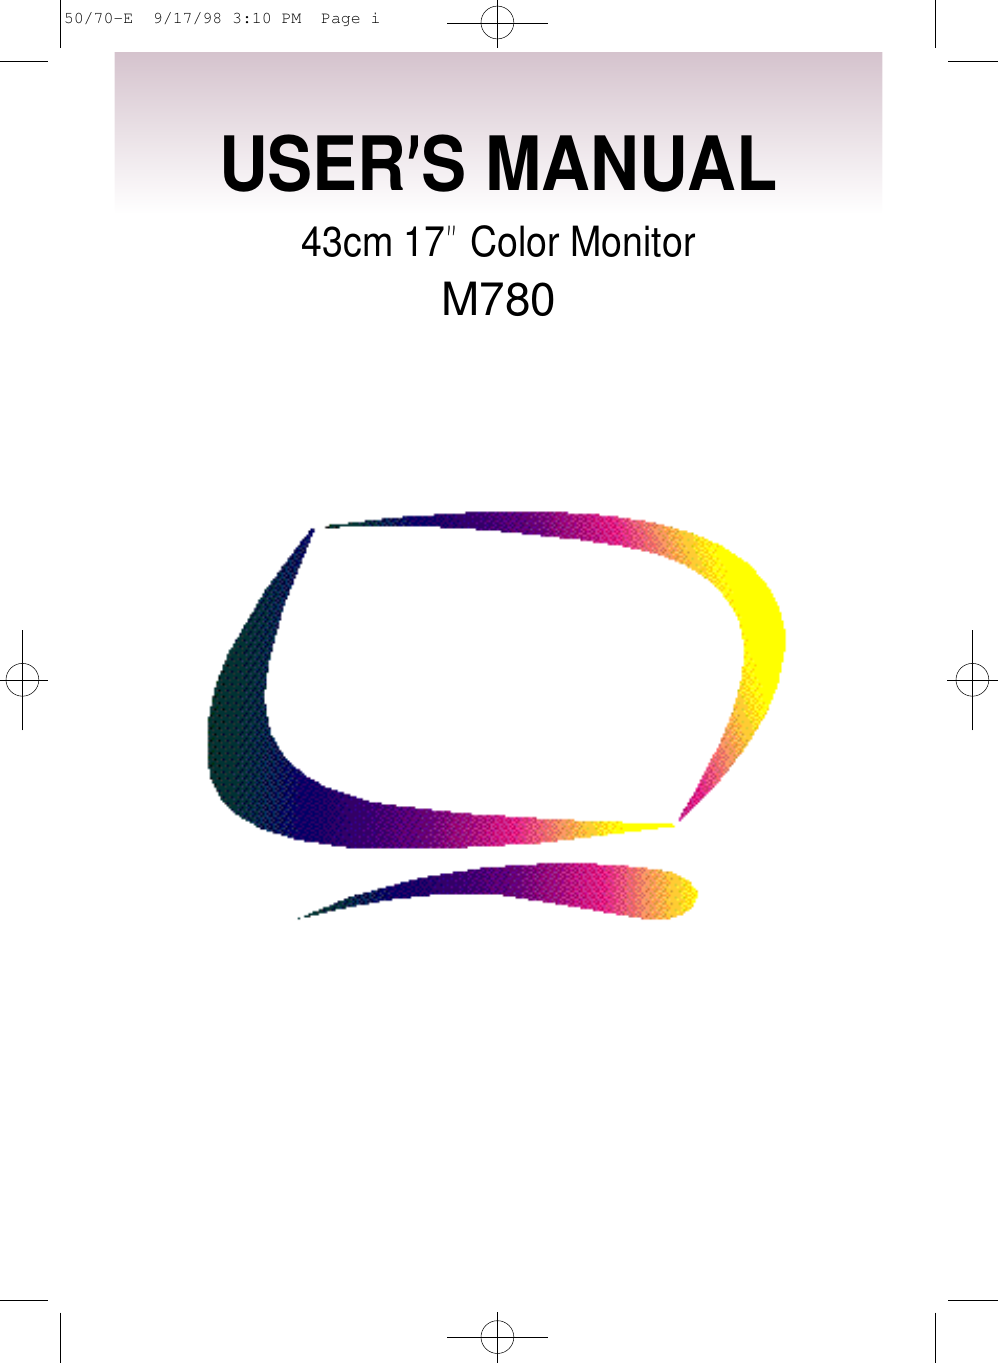 USER’S MANUAL43cm 17”Color MonitorM78050/70-E  9/17/98 3:10 PM  Page i